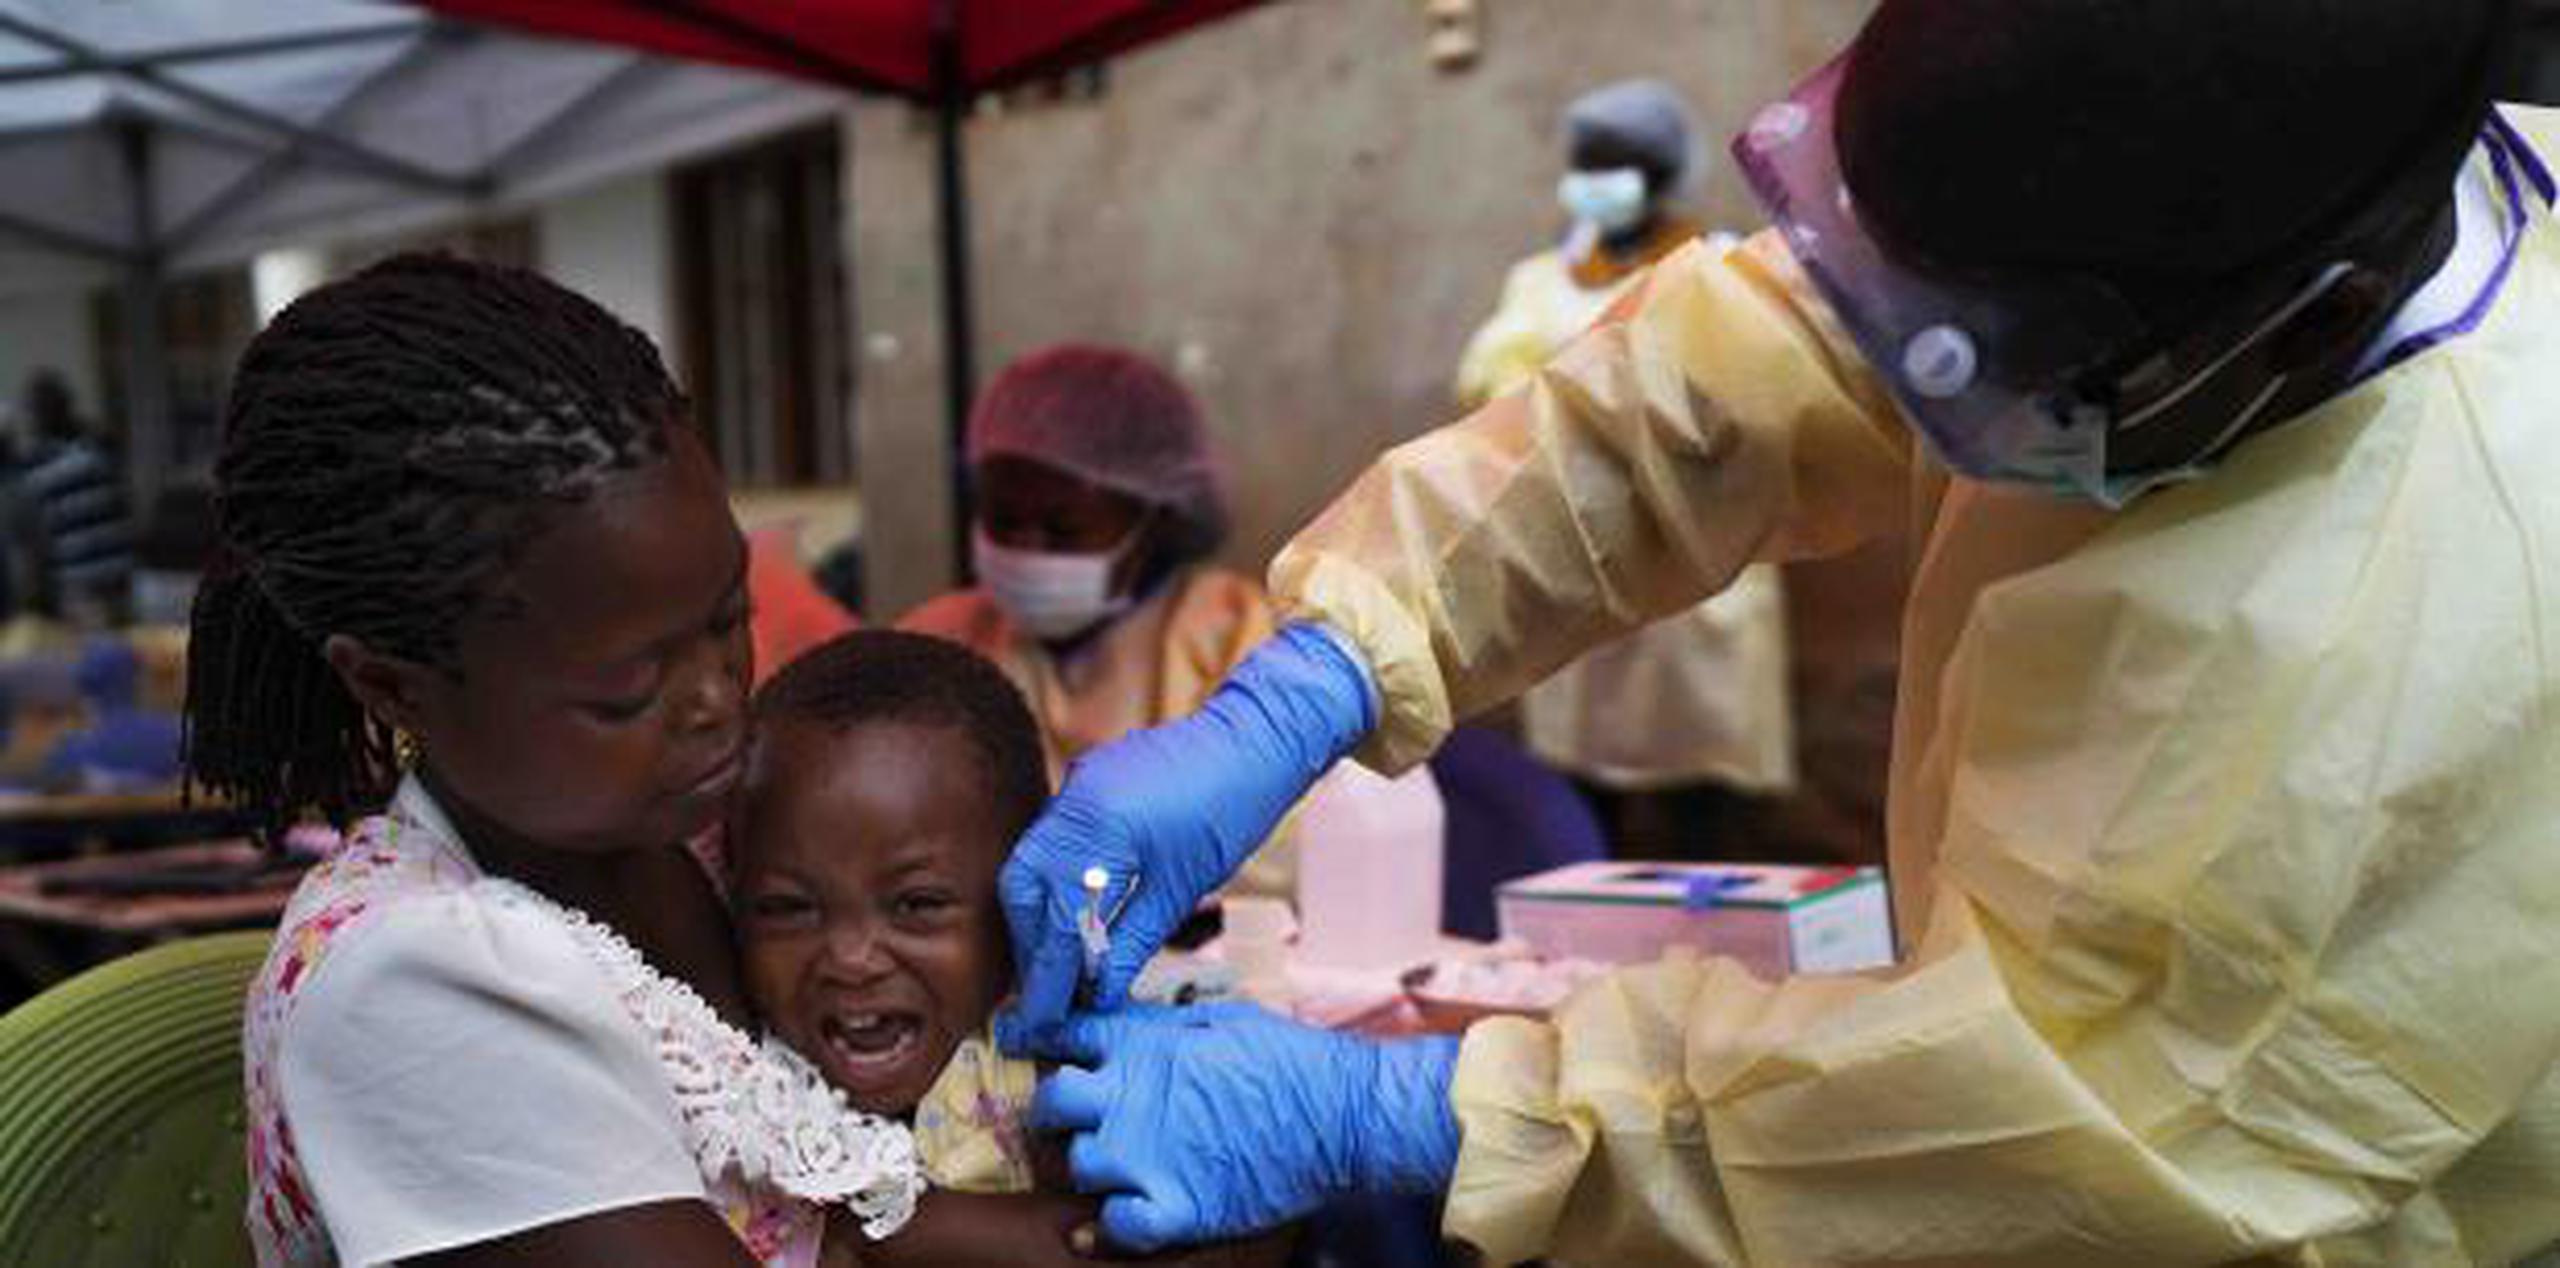 Médicos Sin Fronteras ha pedido que un comité independiente gestione las vacunaciones para aumentar la transparencia y aumentar el acceso a los fármacos, de forma similar a los utilizados para responder a brotes de meningitis, fiebre amarilla y cólera. (AP)